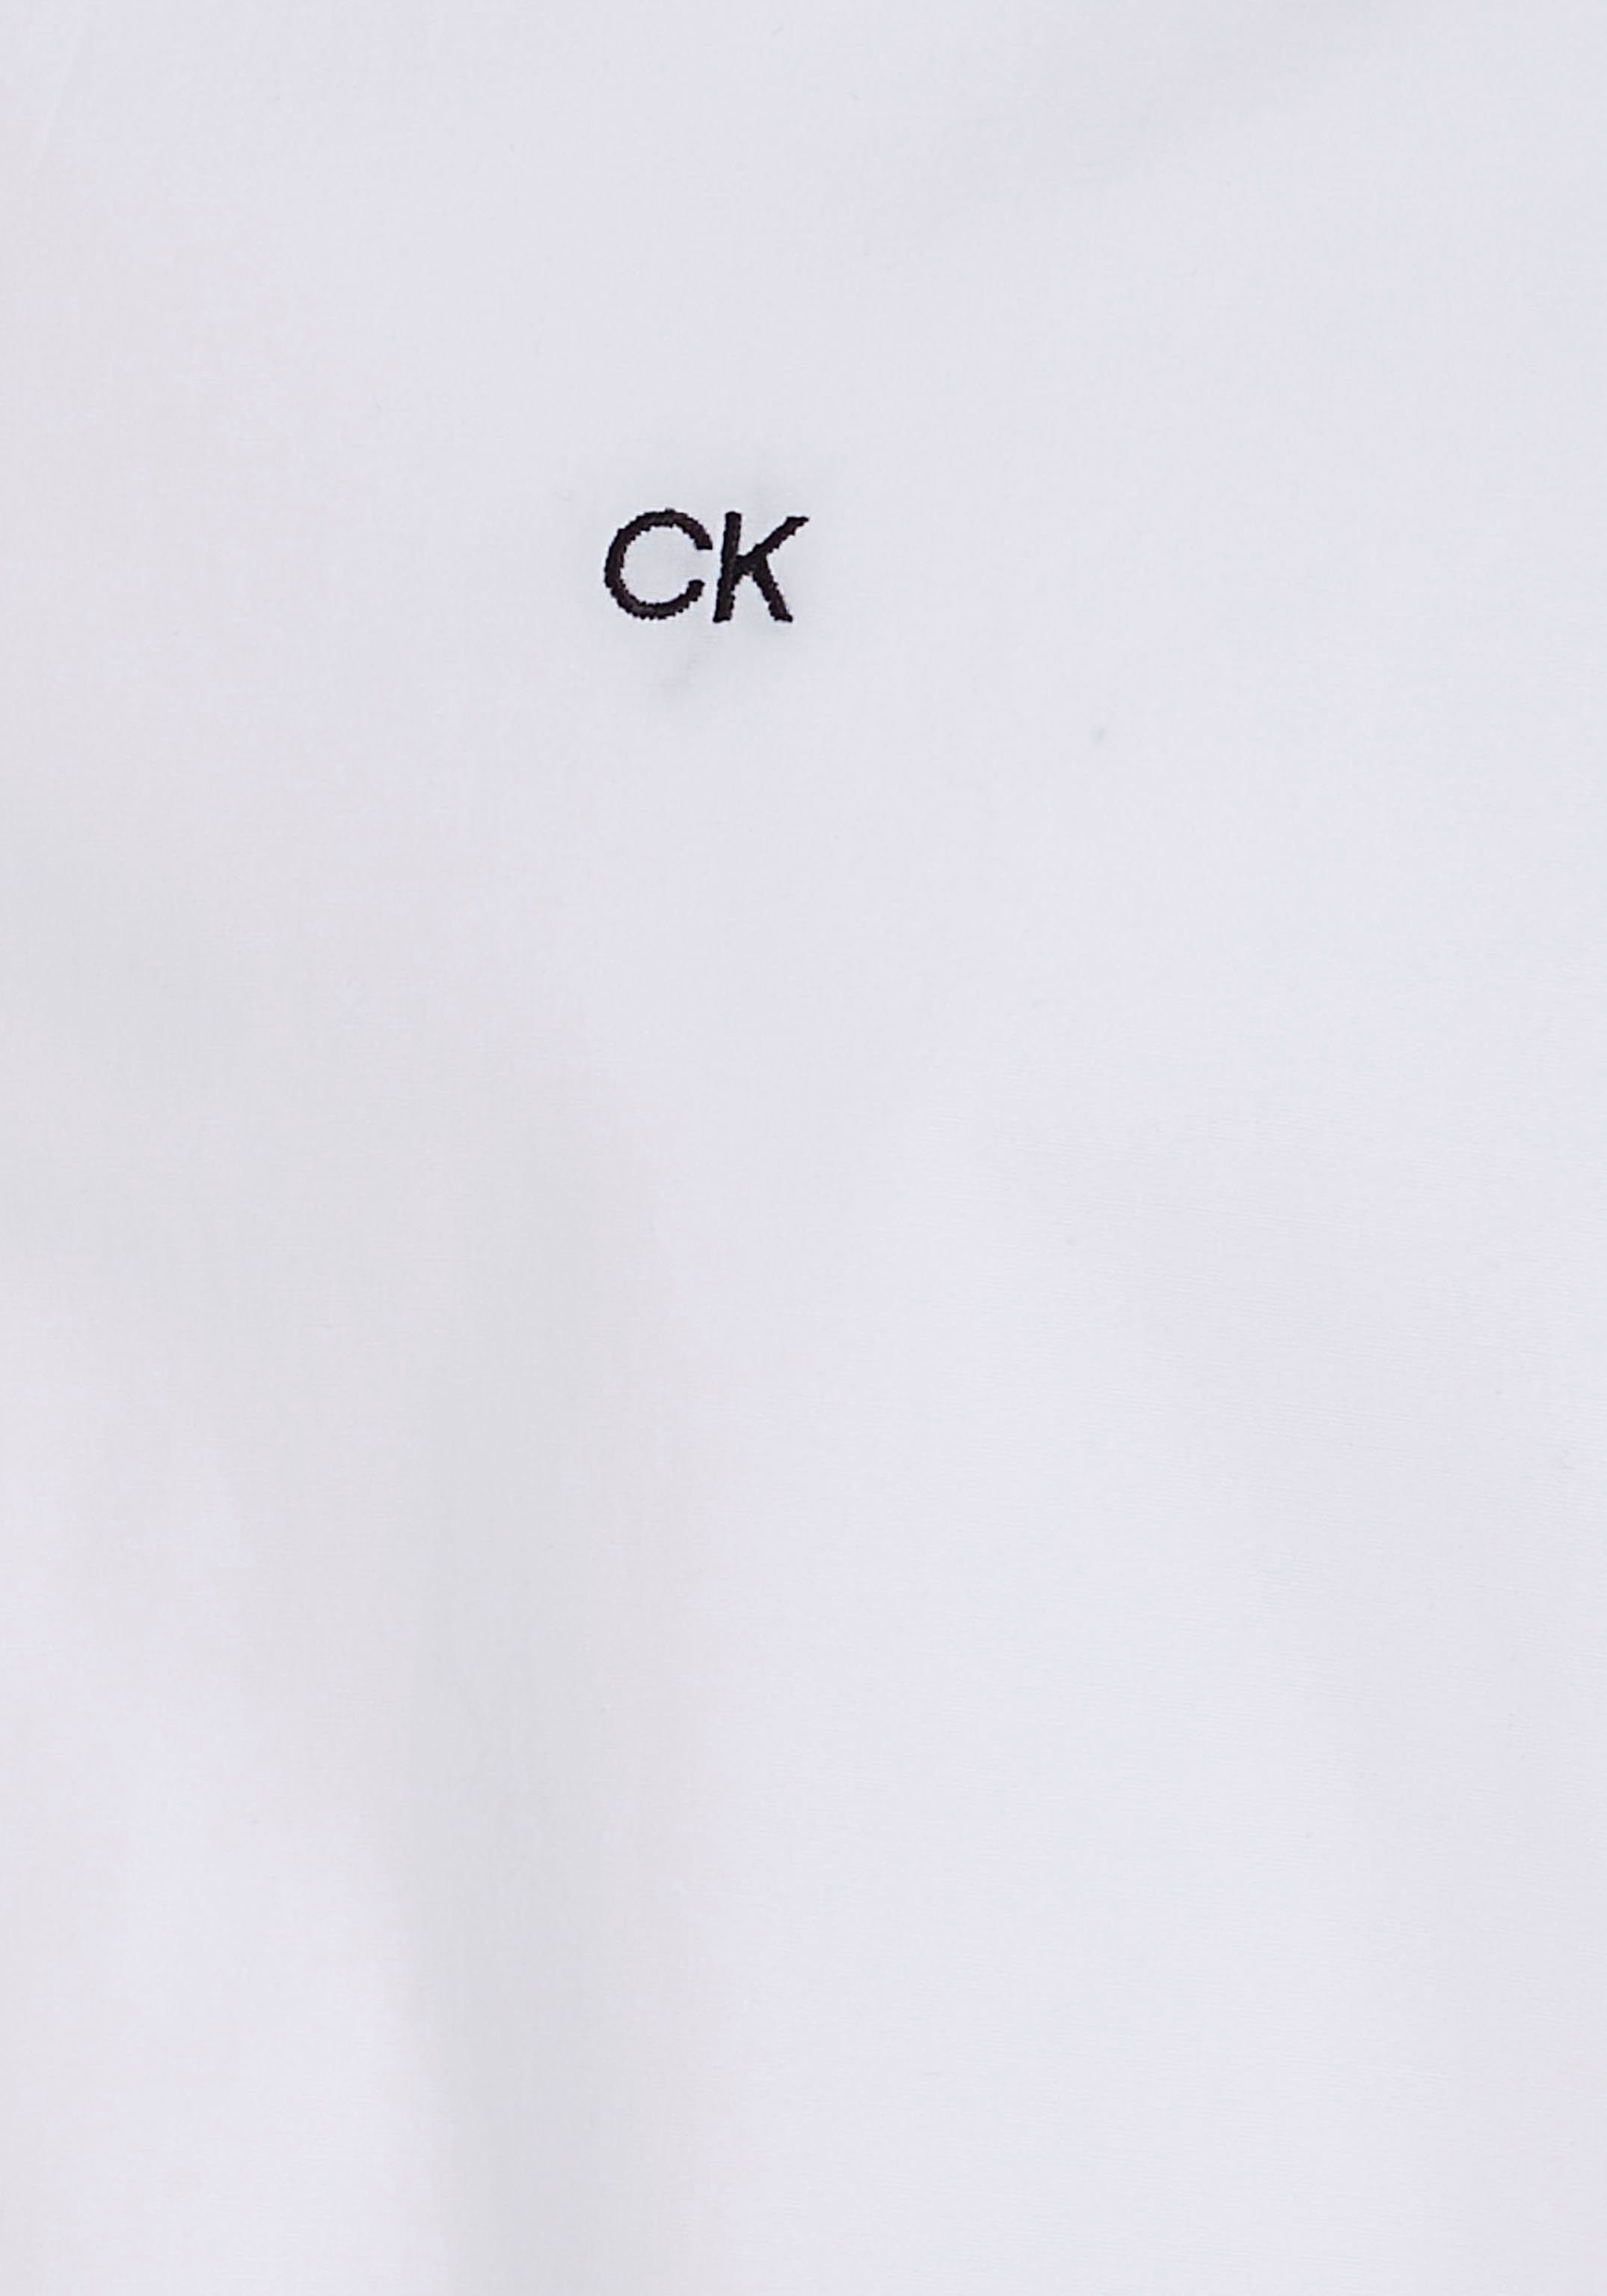 Klein SHIRT STRETCH white mit Brust Calvin POPLIN Businesshemd der Calvin Klein bright SLIM auf Logo